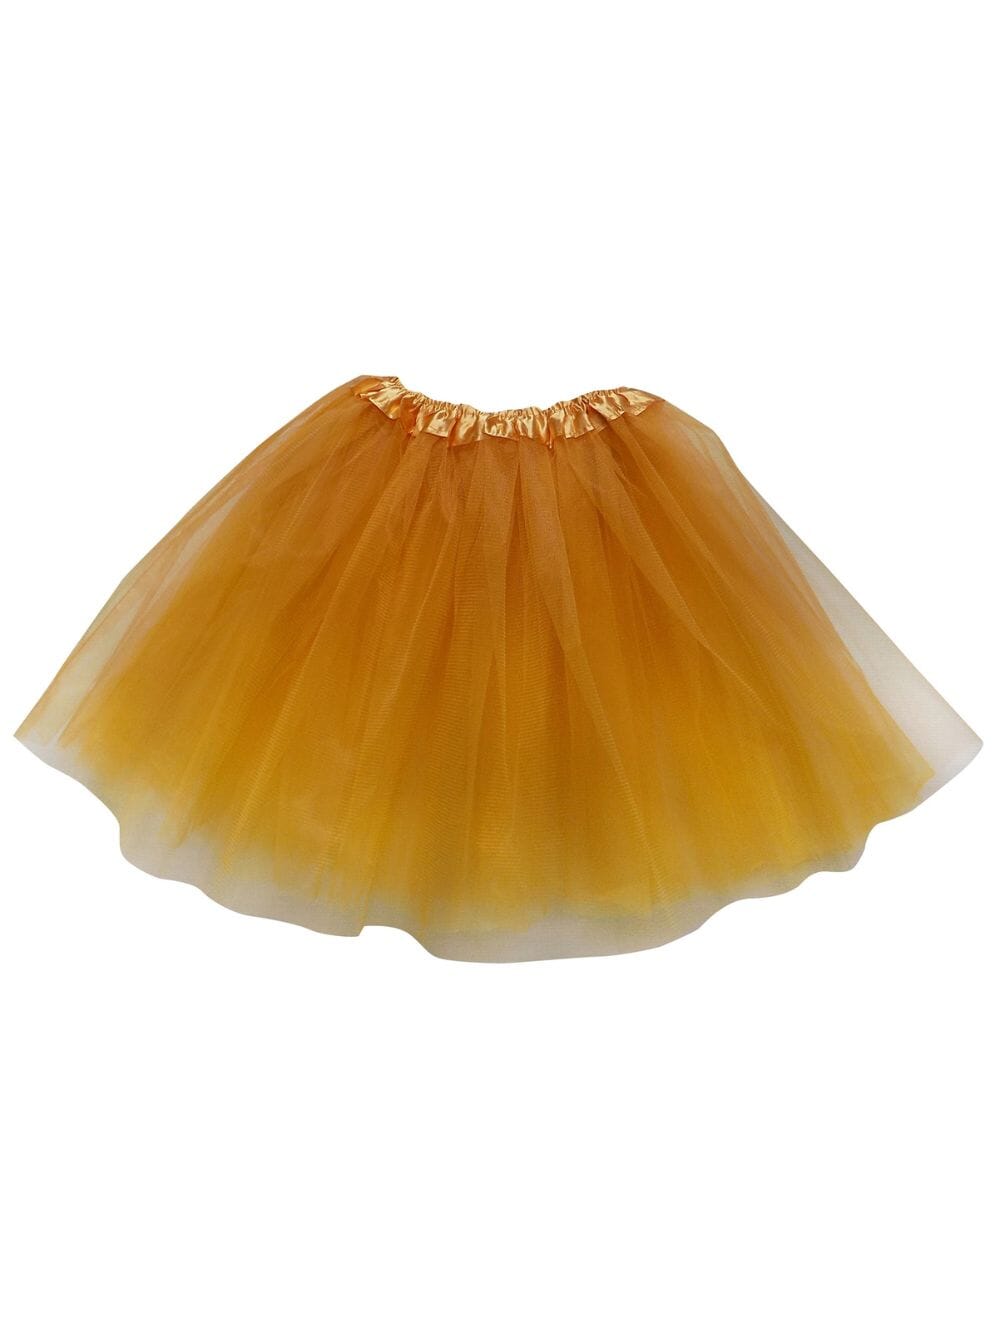 Gold Tutu Skirt for Adult - Women's Size 3-Layer Basic Ballet Costume Dance Tutus - Sydney So Sweet